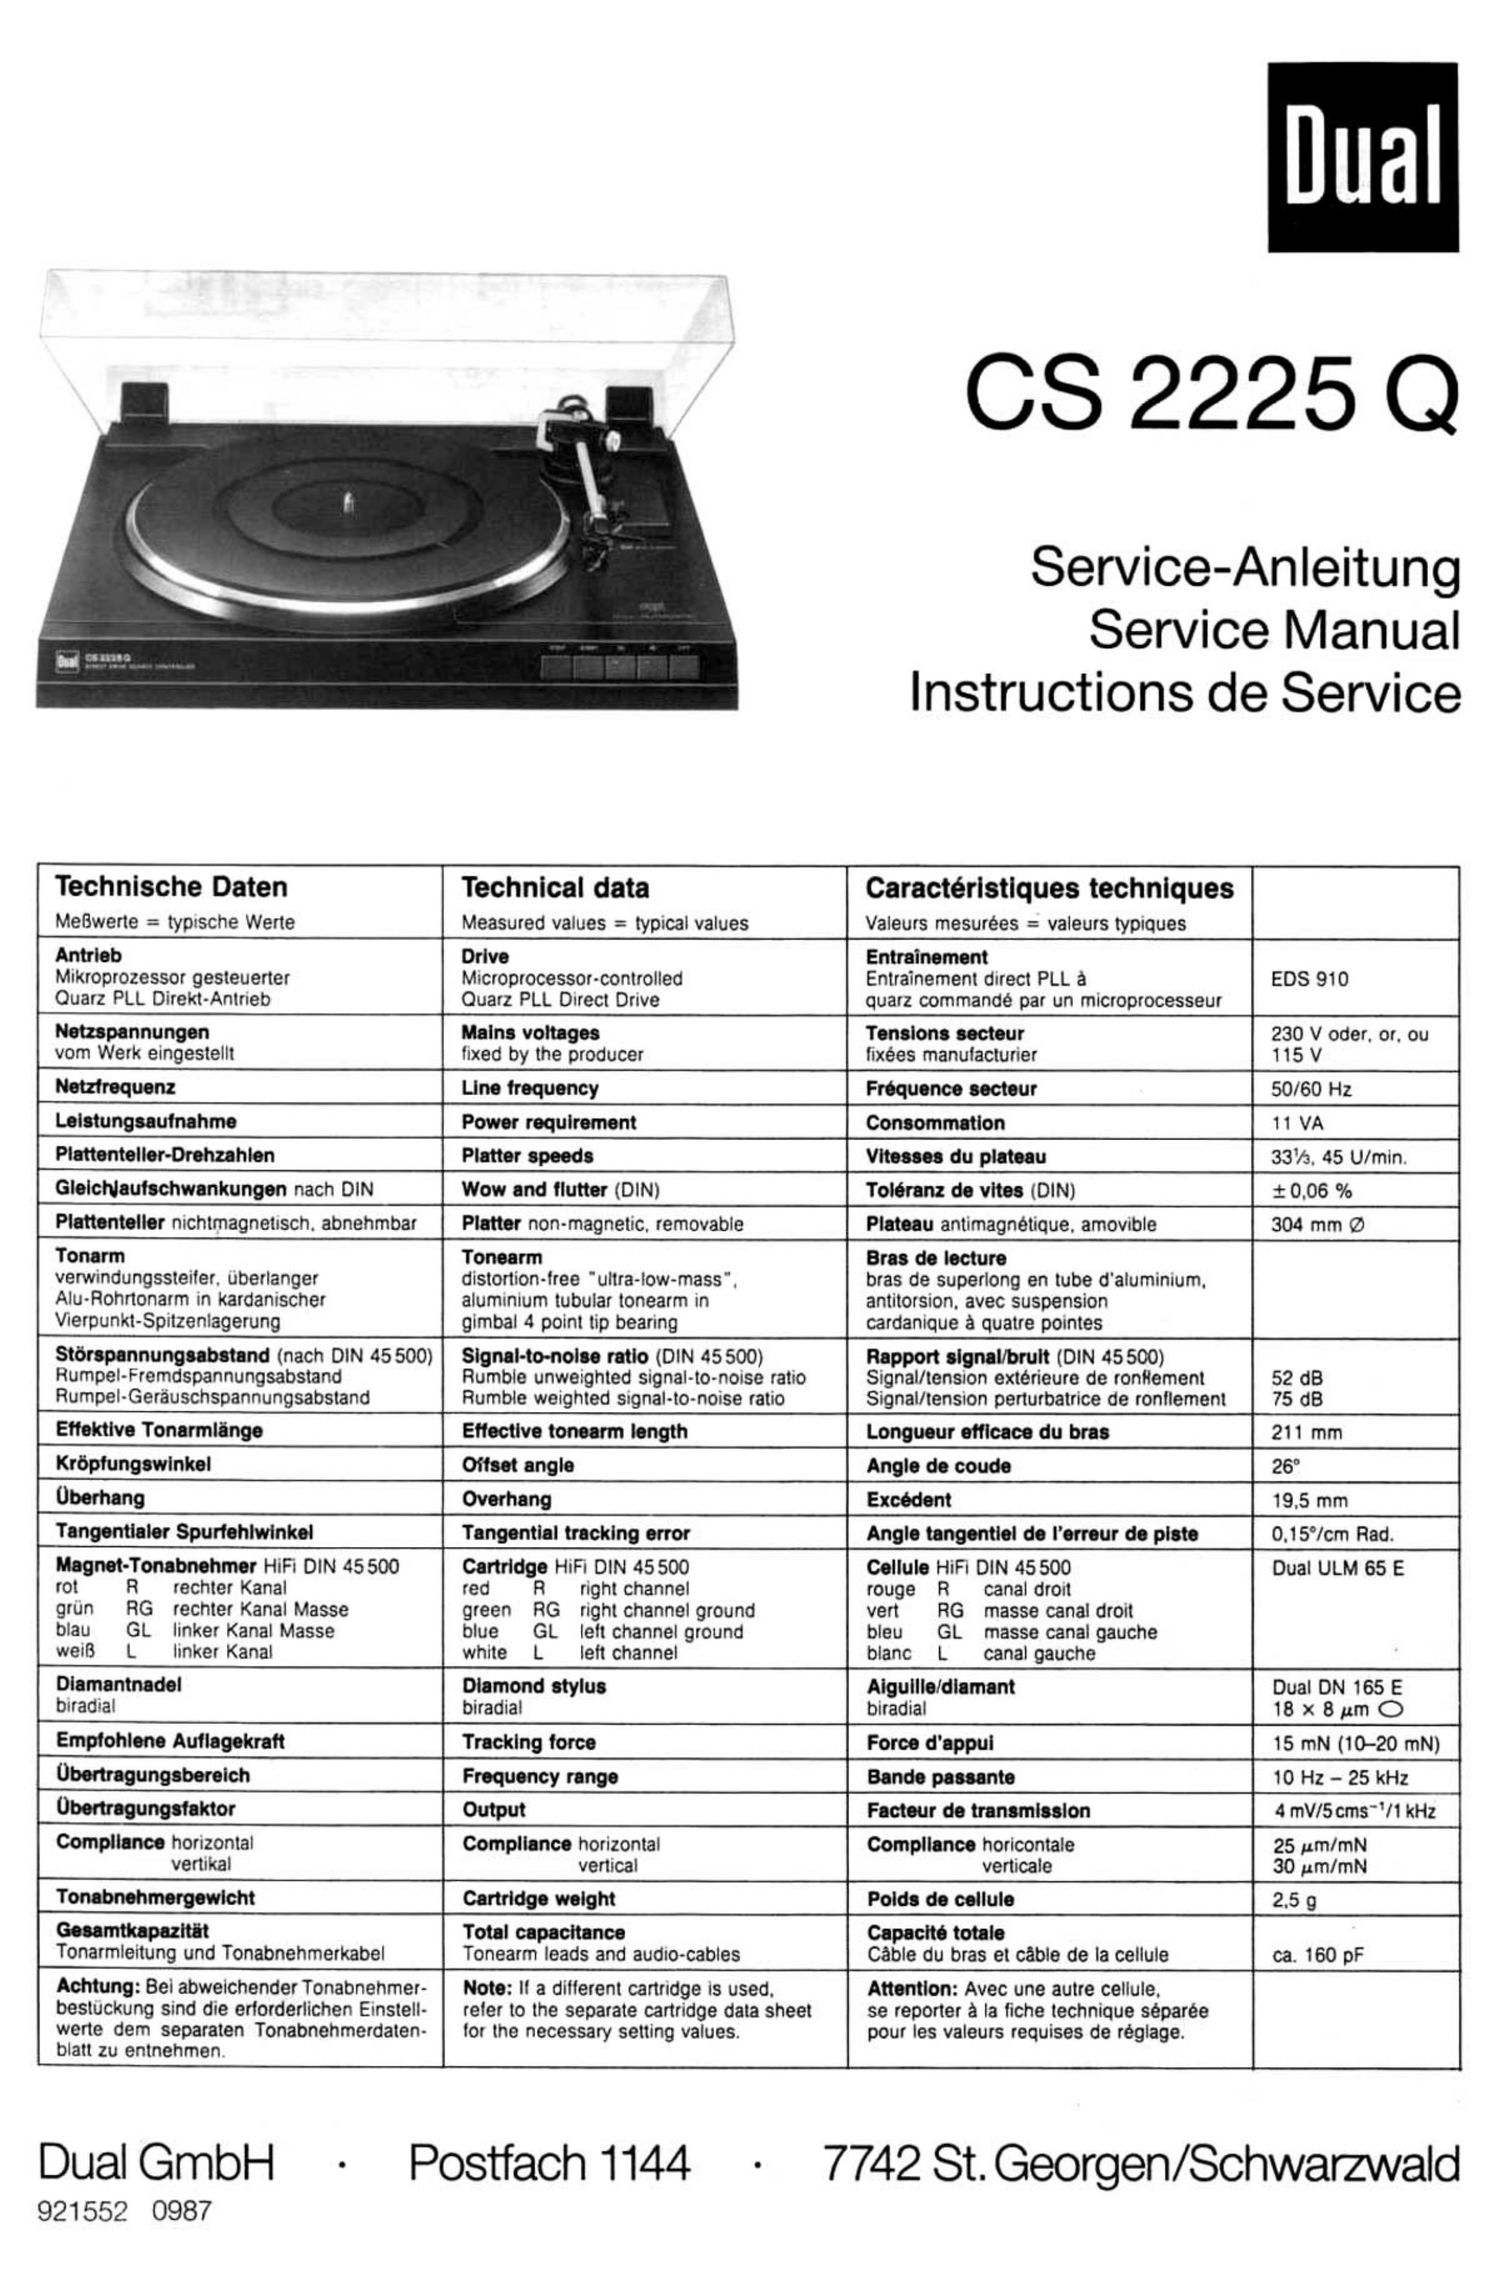 Dual CS 2225 Q Owners Manual